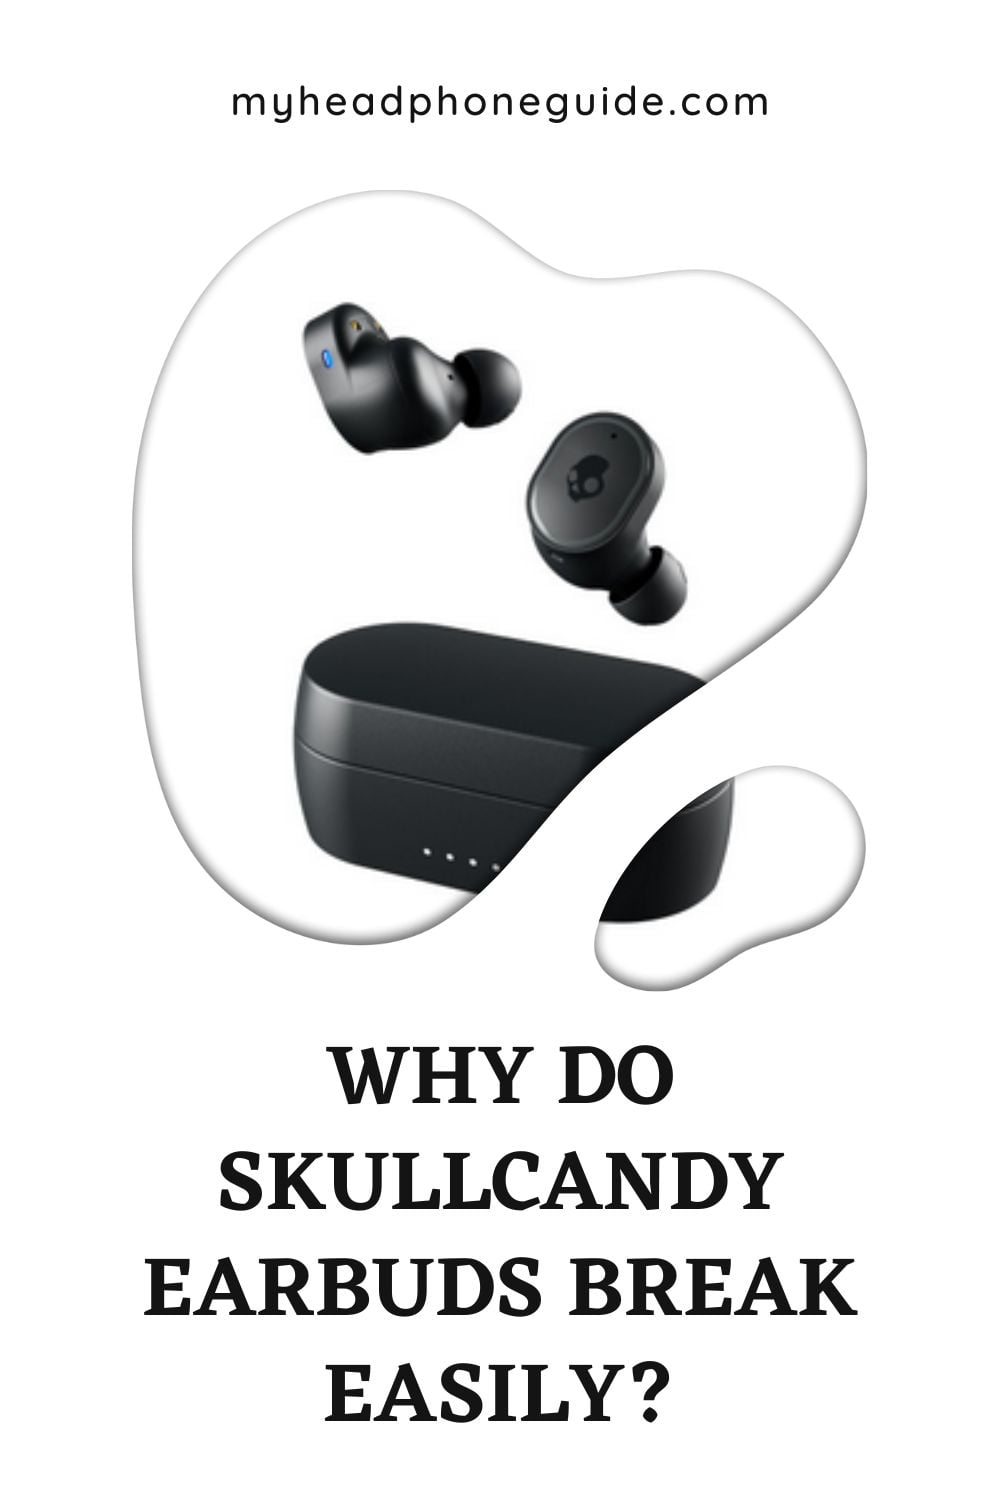 Why Do Skullcandy Earbuds Break Easily?